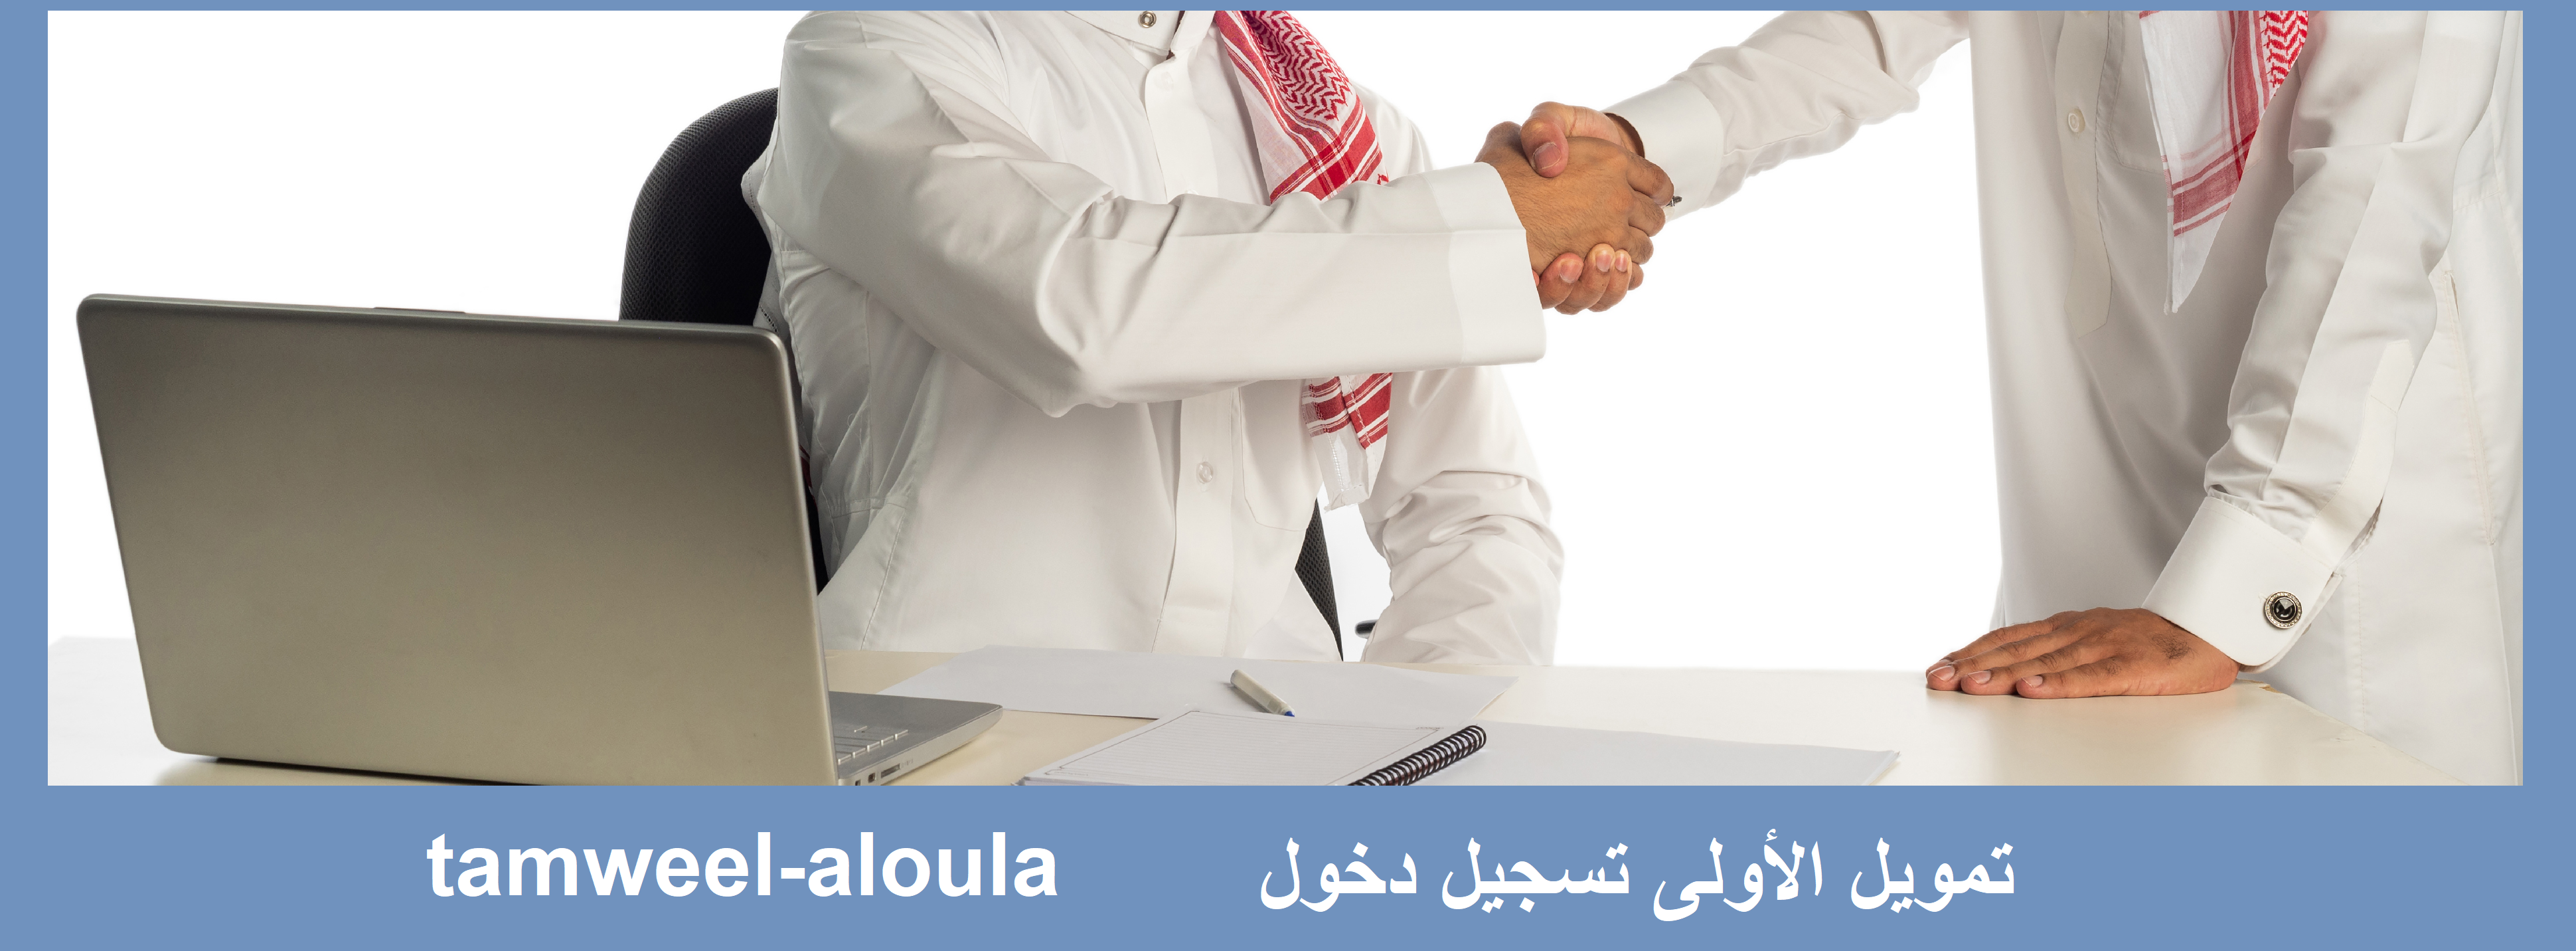 "تمويل سريع جدا" شركة التمويل الأولى tamweel aloula بدون كفيل ولا تحويل راتب